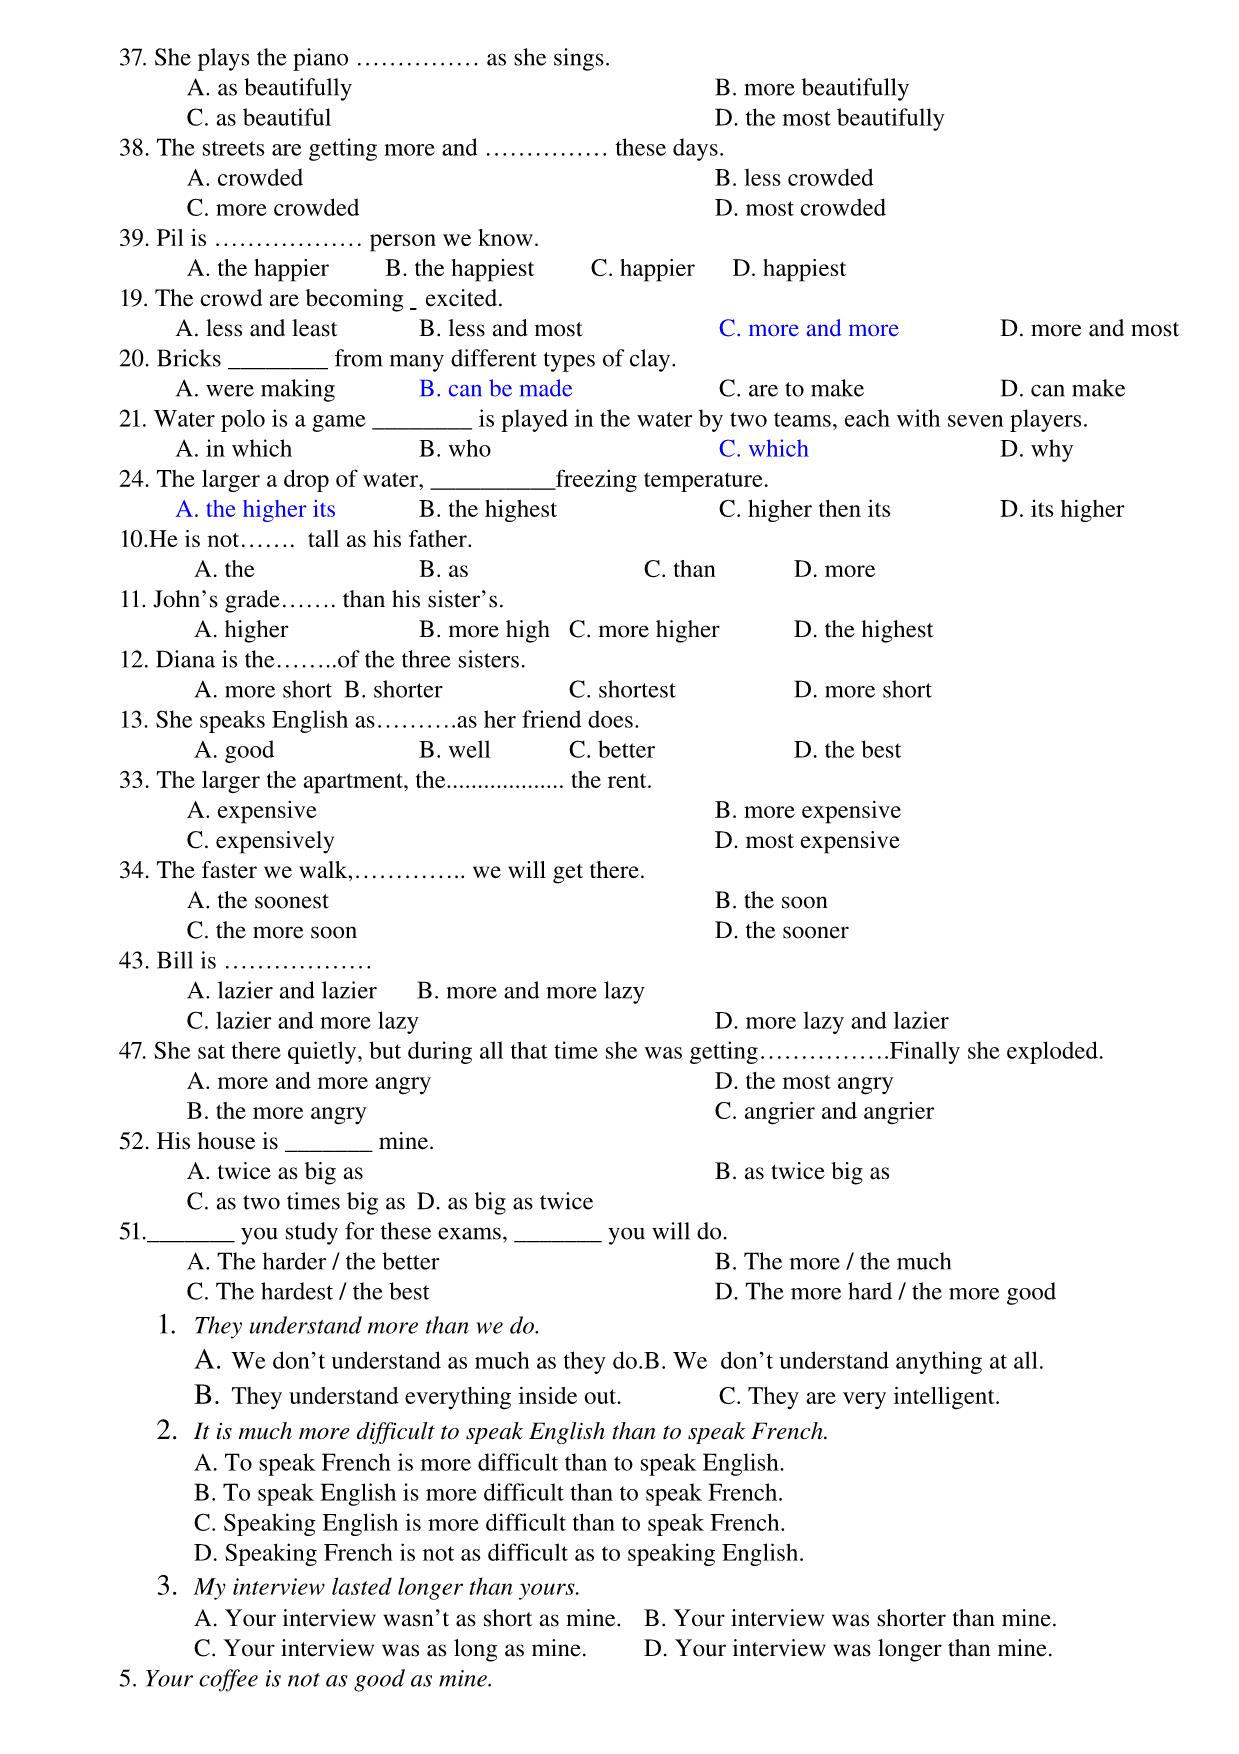 Ôn tập kiểm tra 1 tiết lần 1 môn Tiếng Anh Lớp 12 trang 5